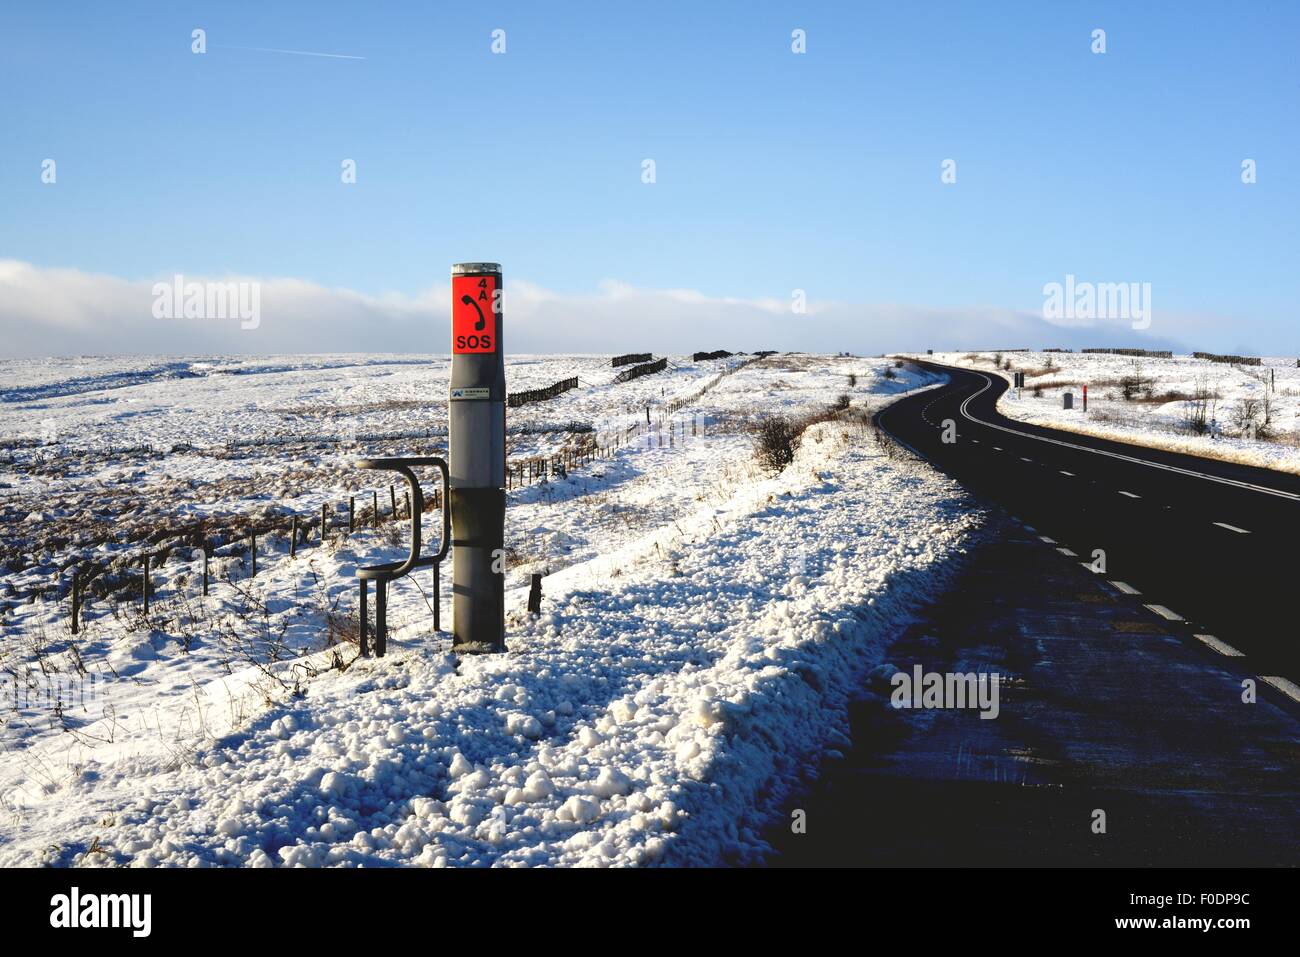 Un SOS point avec la neige en hiver sur les trans Pennine UN628 Woodhead pass road, dans le Nord de l'Angleterre. Banque D'Images